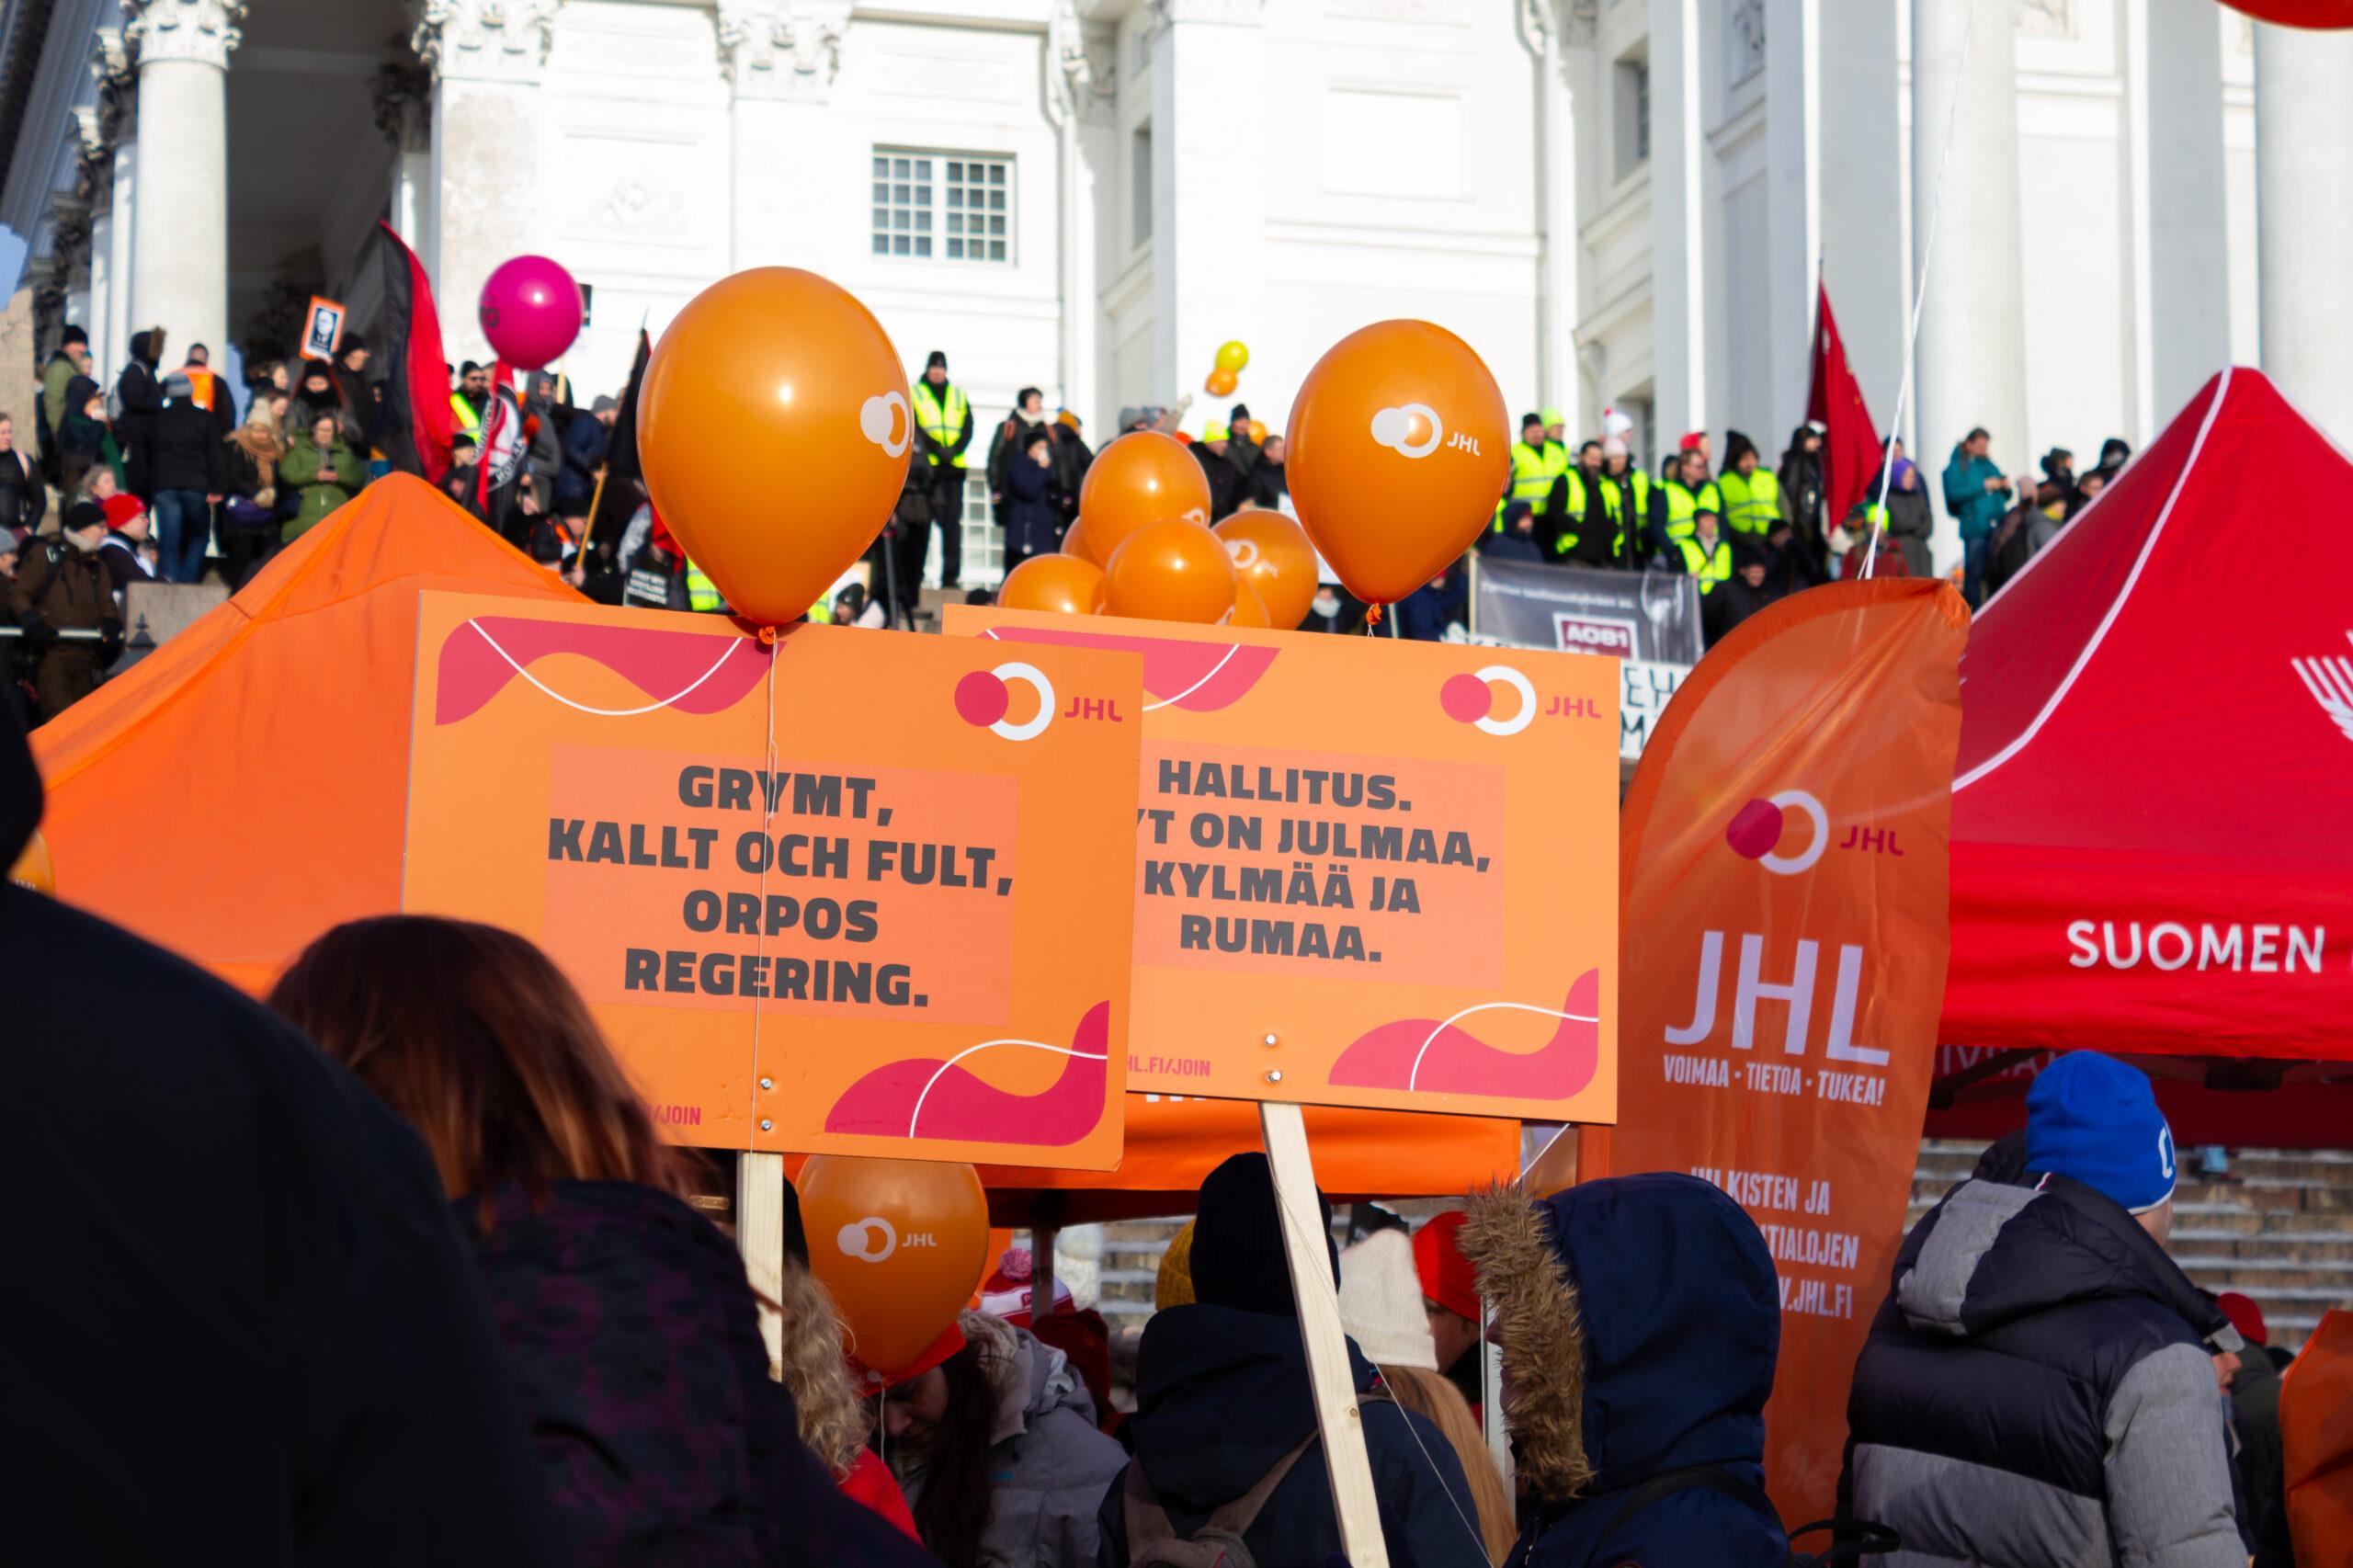 JHL-skyltar, ballonger och demonstranter framför domkyrkan på Senatstorget i Helsingfors.